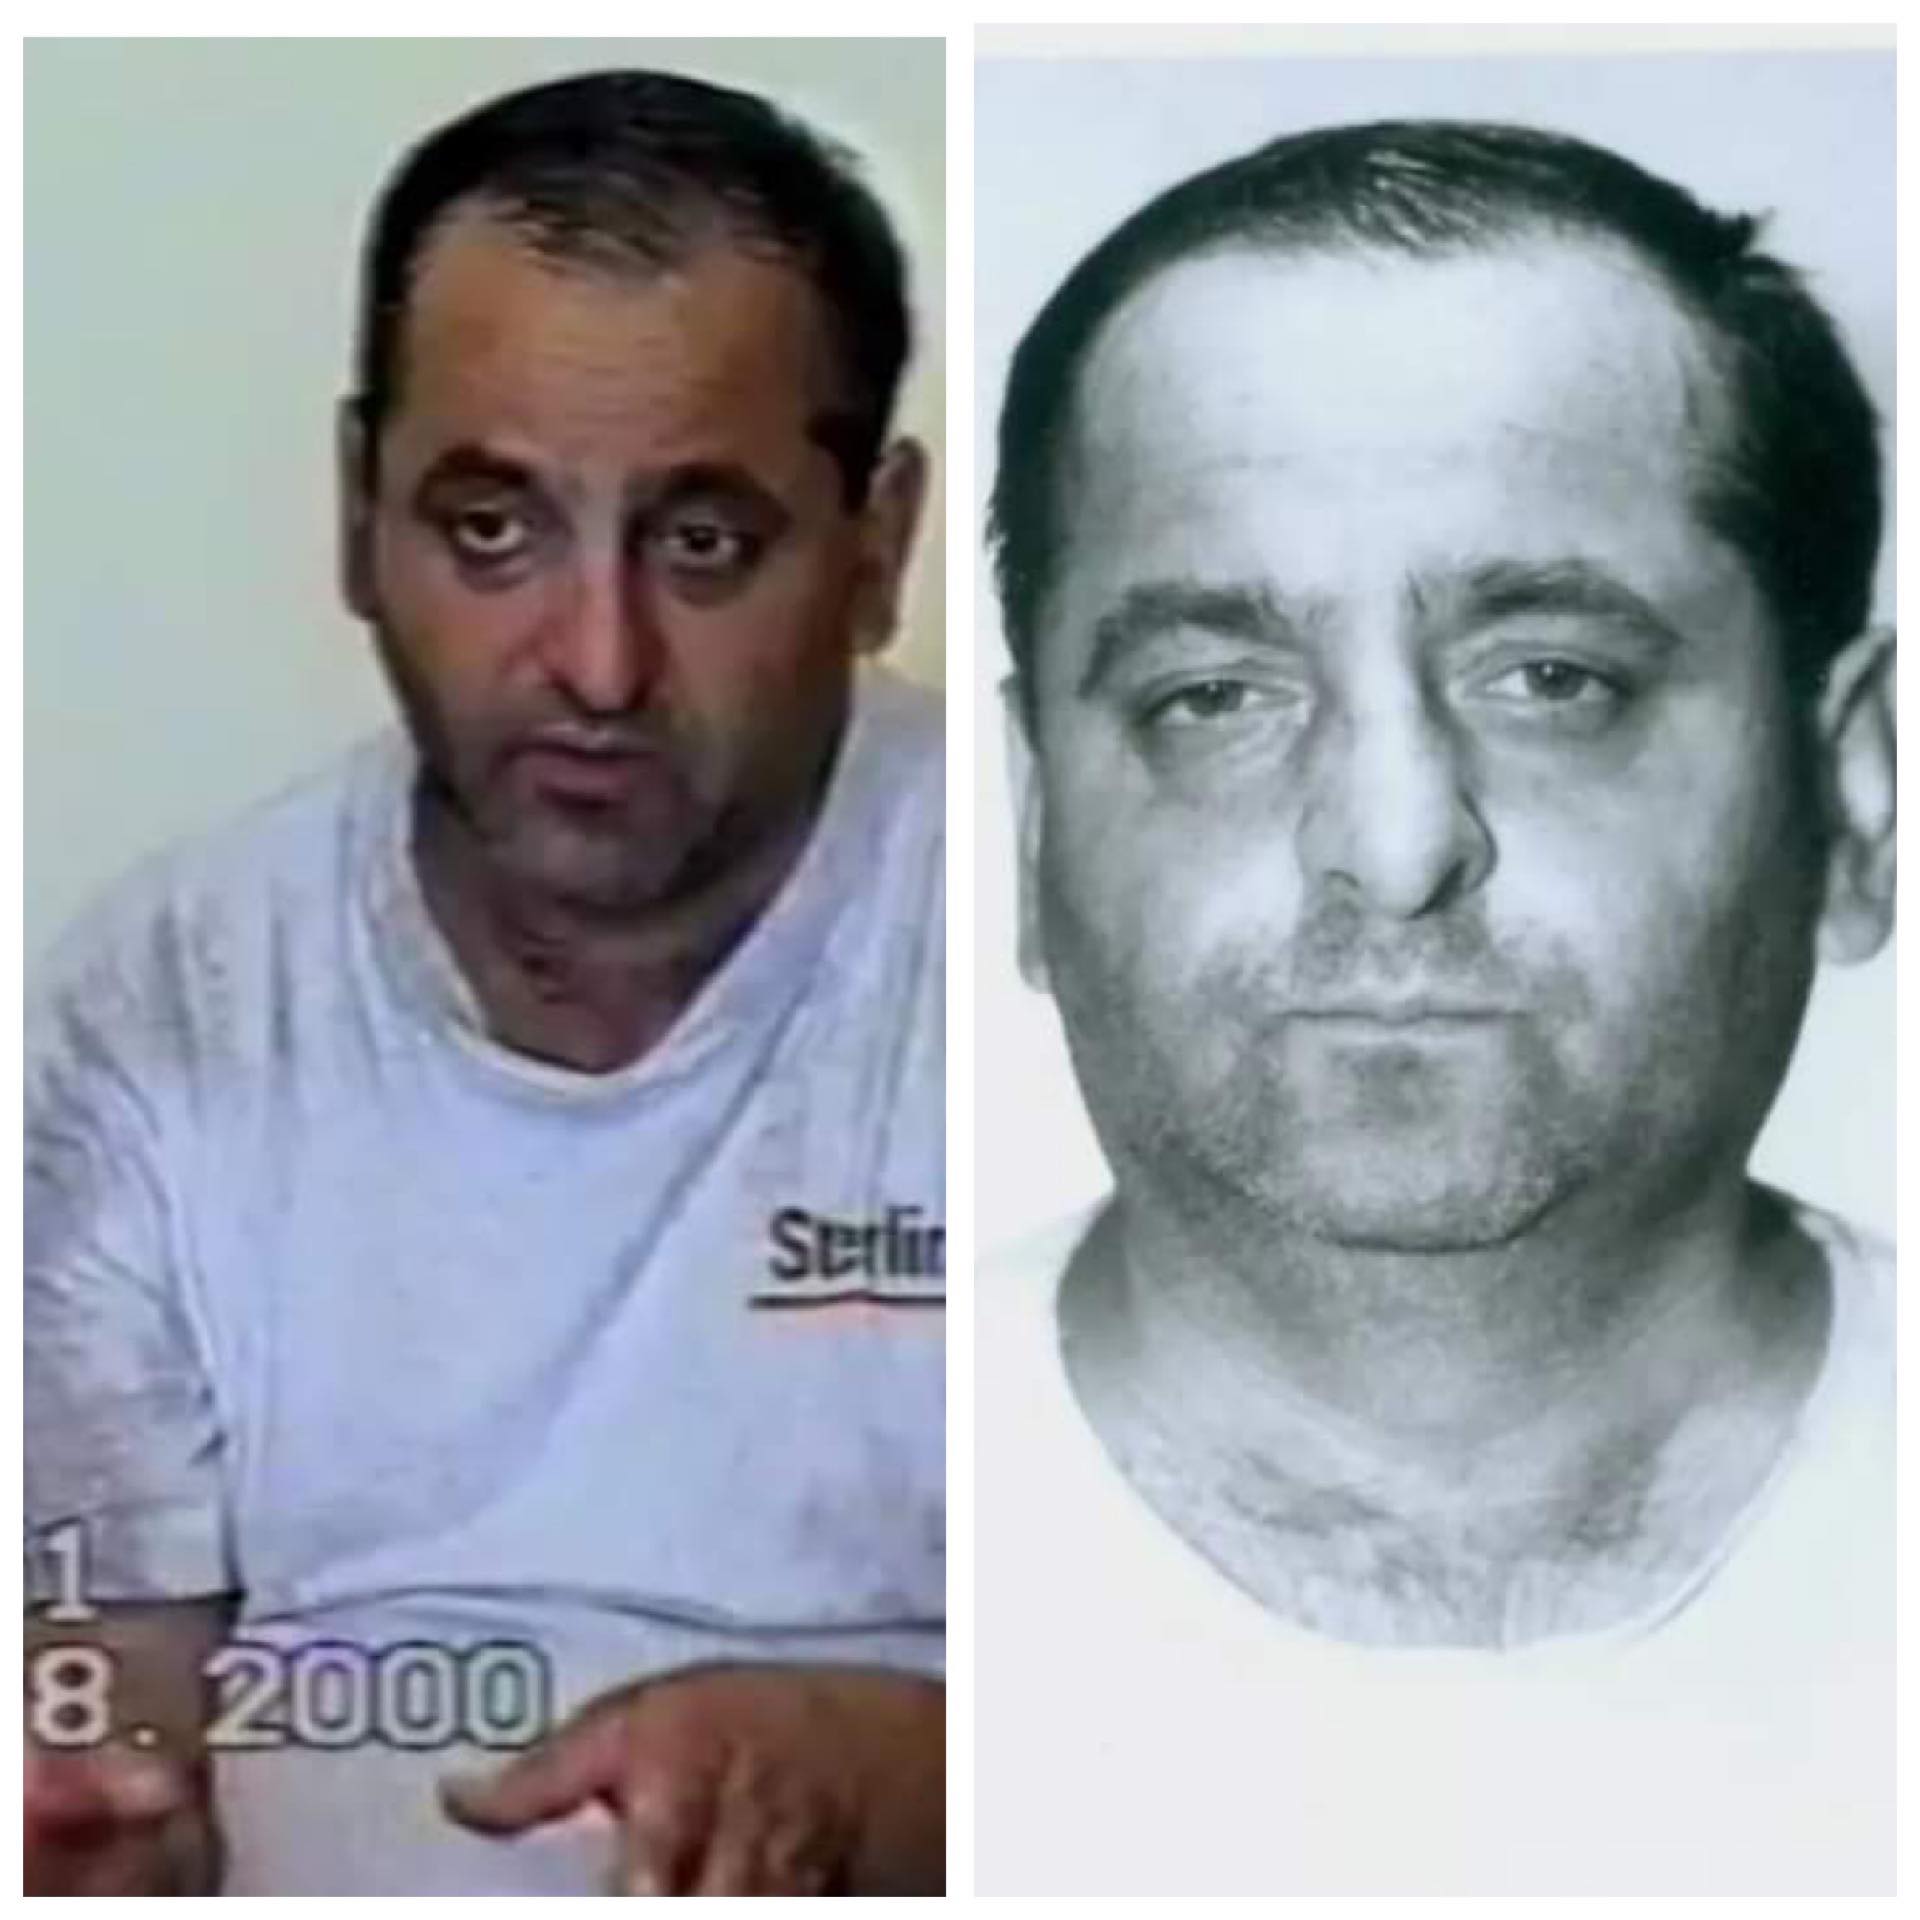 EXCLUSIV: Grigore Bota alias ”Brancardierul morții” sau “Ucigașul de boschetari“ va fi pus în libertate